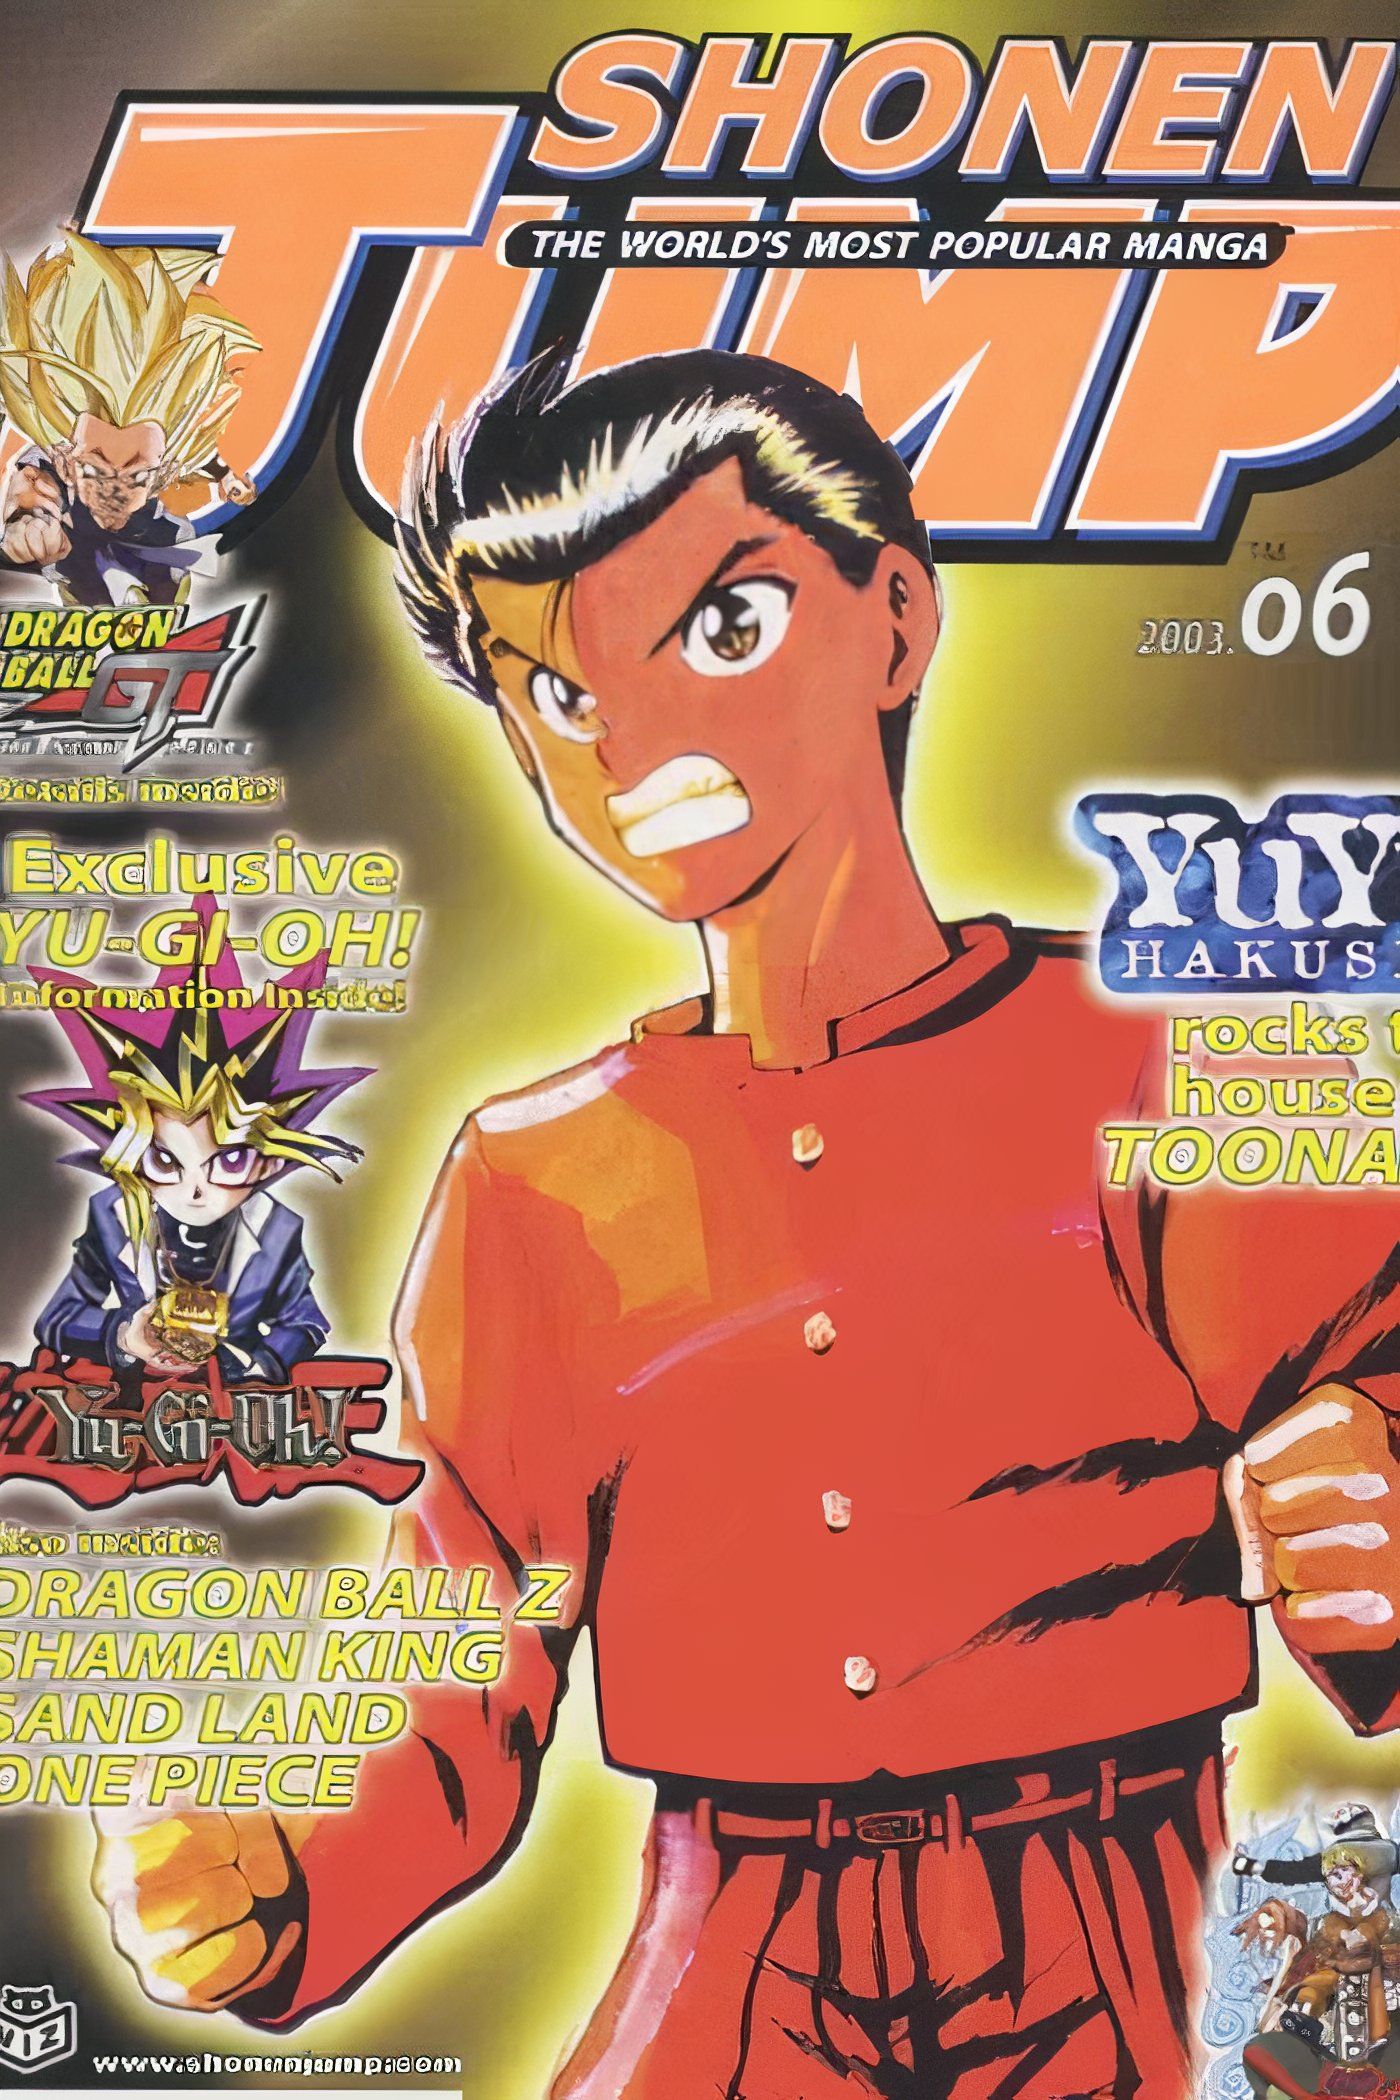 American Weekly Shonen Jump 6 com Yusuke Urameshi de Yu Yu Hakusho